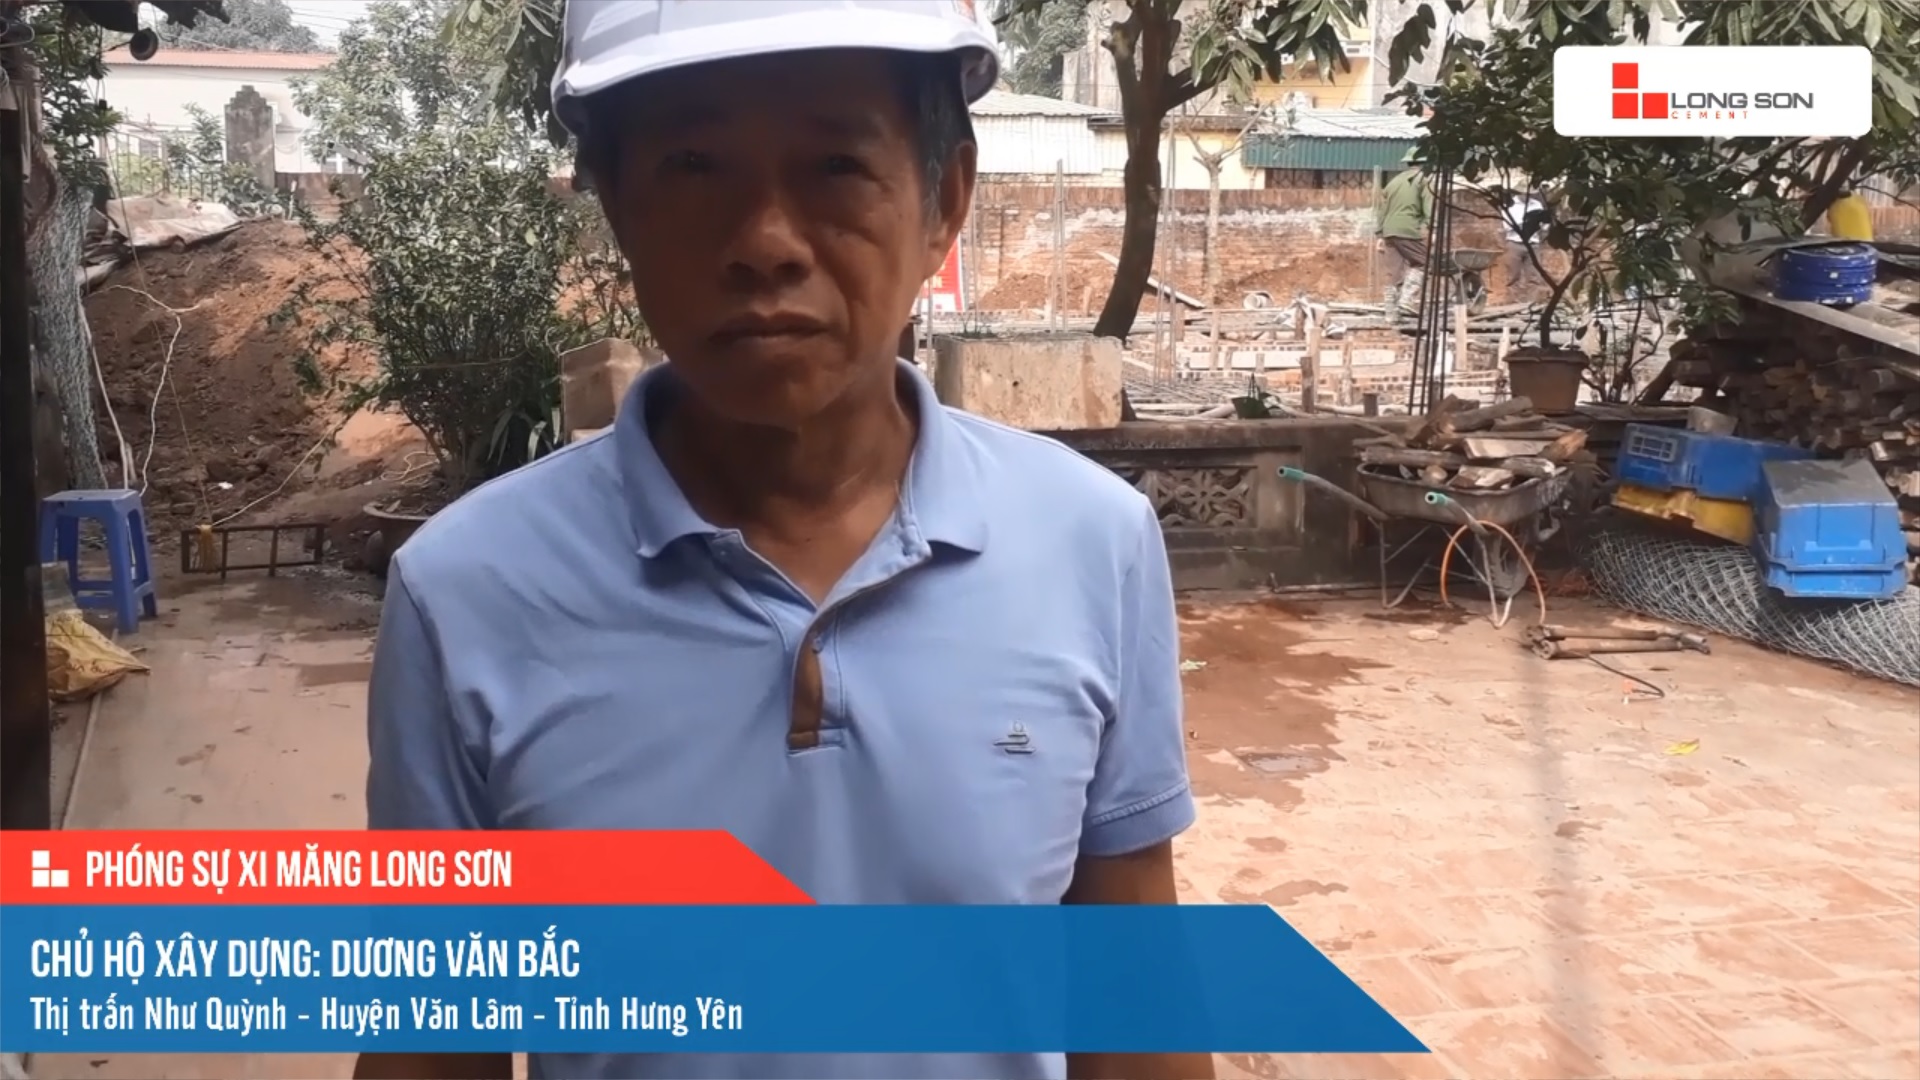 Phóng sự công trình sử dụng Xi măng Long Sơn tại Hưng Yên 06.04.2021